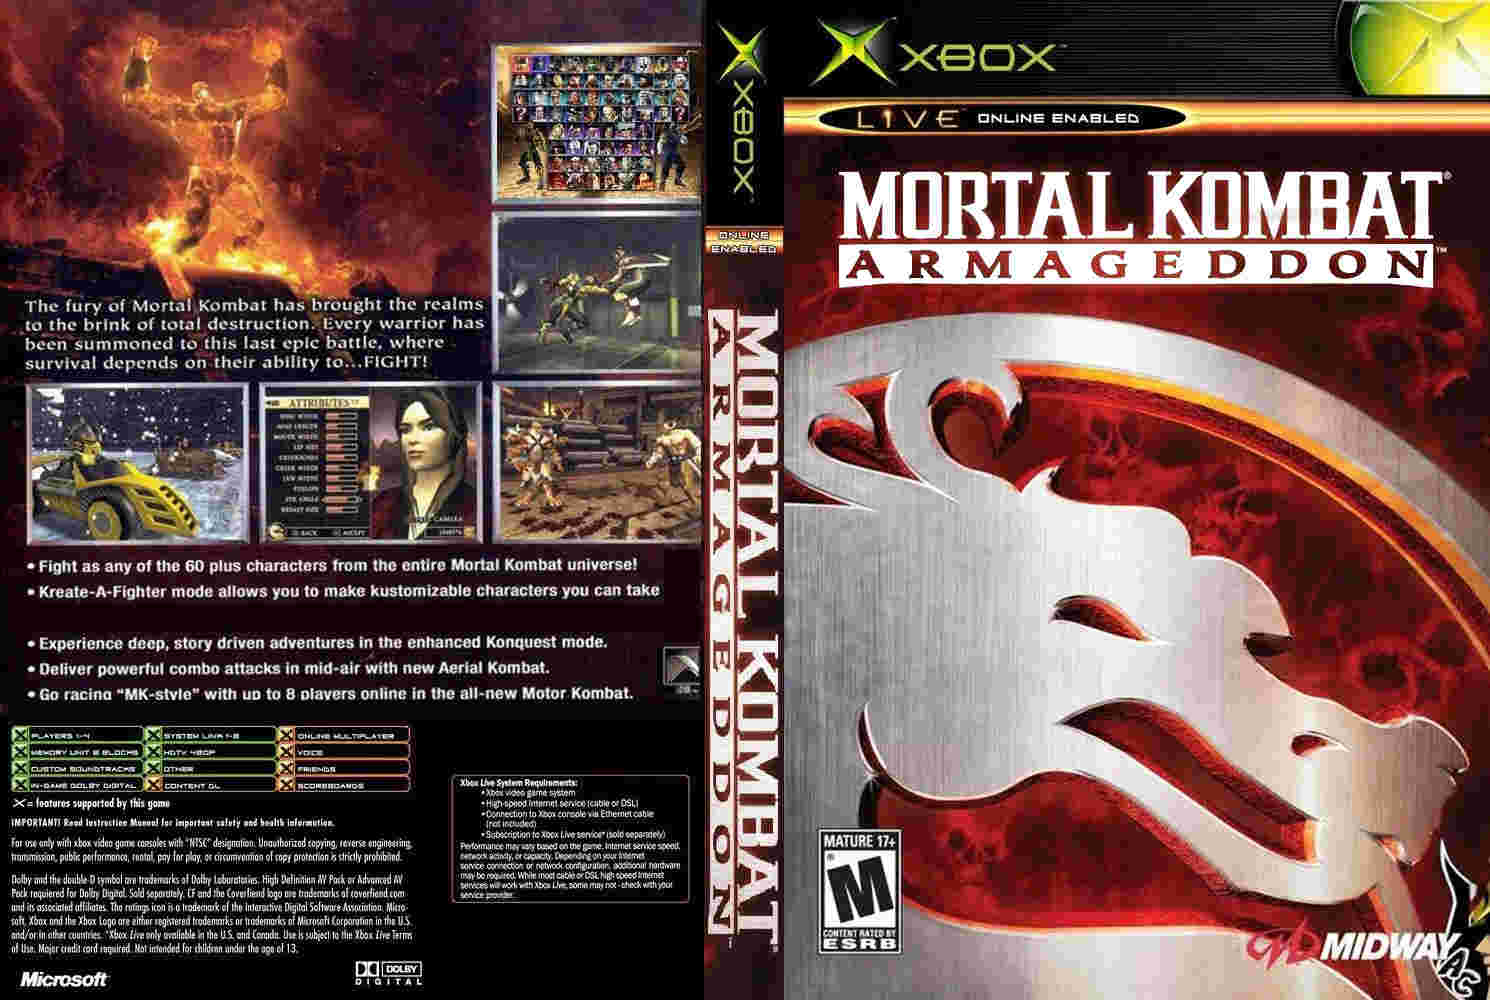 Download mortal kombat armageddon pc full version free